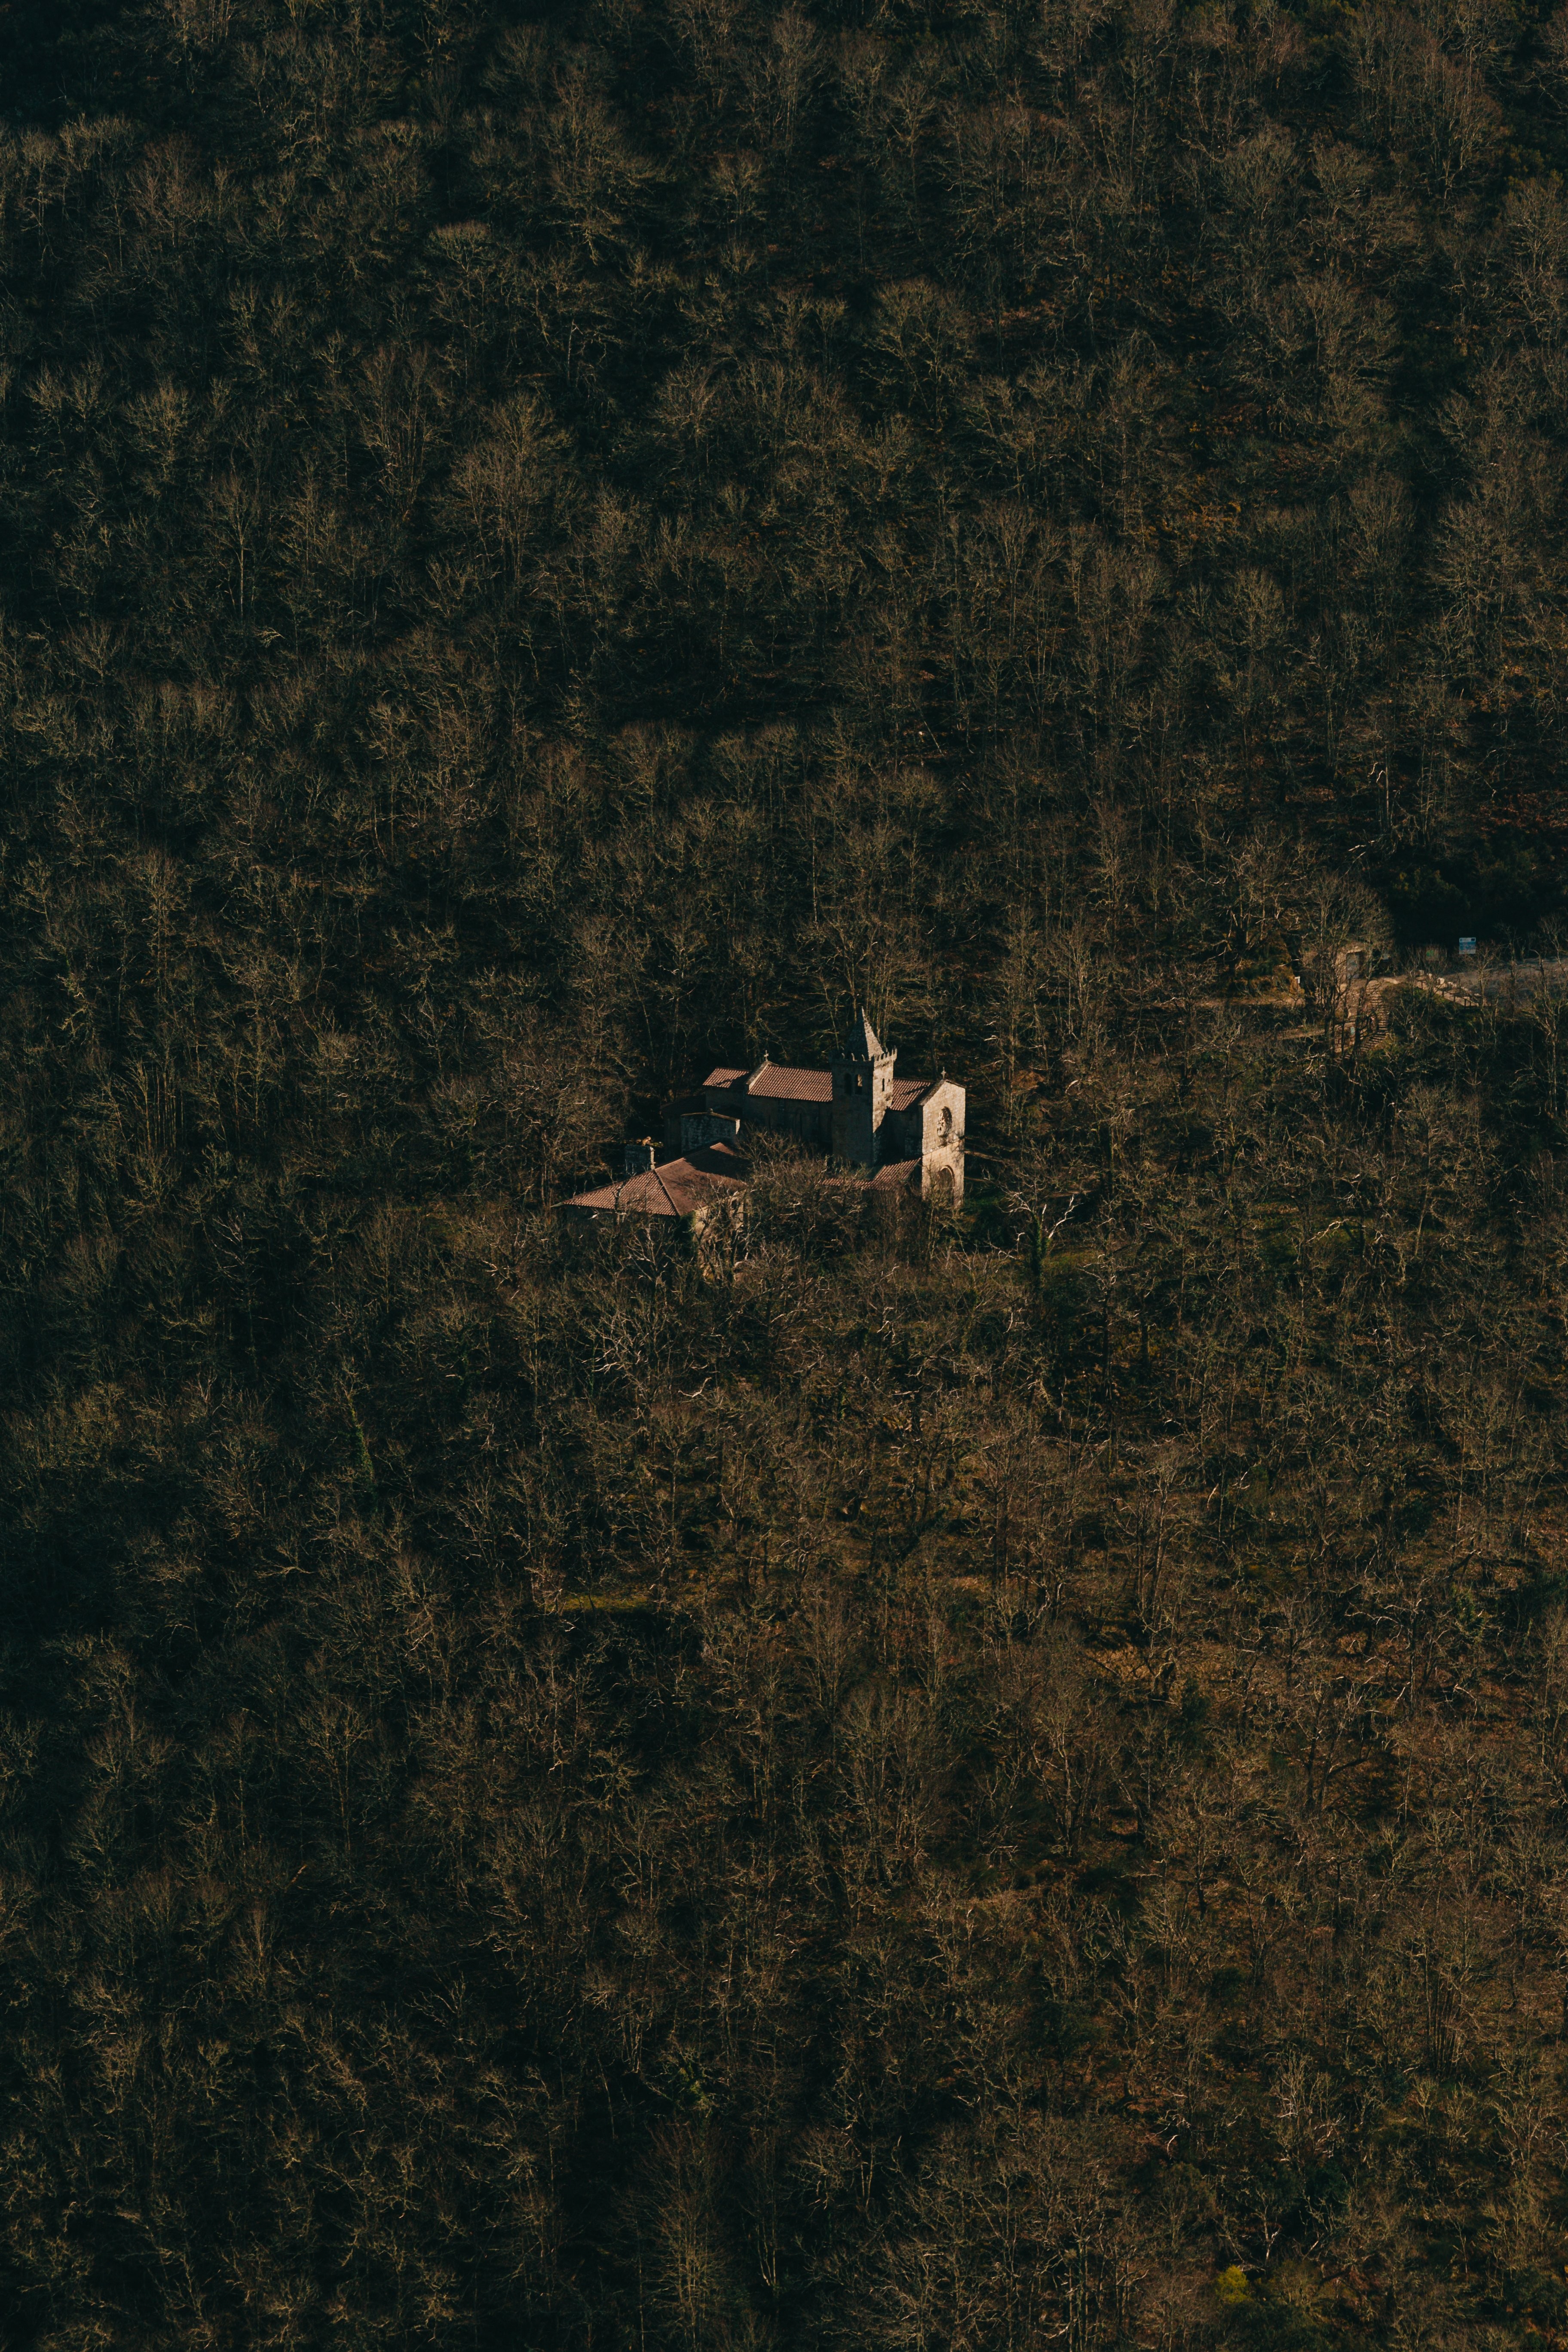 Foto Udara Dari Sebuah Bangunan Yang Berada Di Dalam Hutan Yang Tebal Foto 